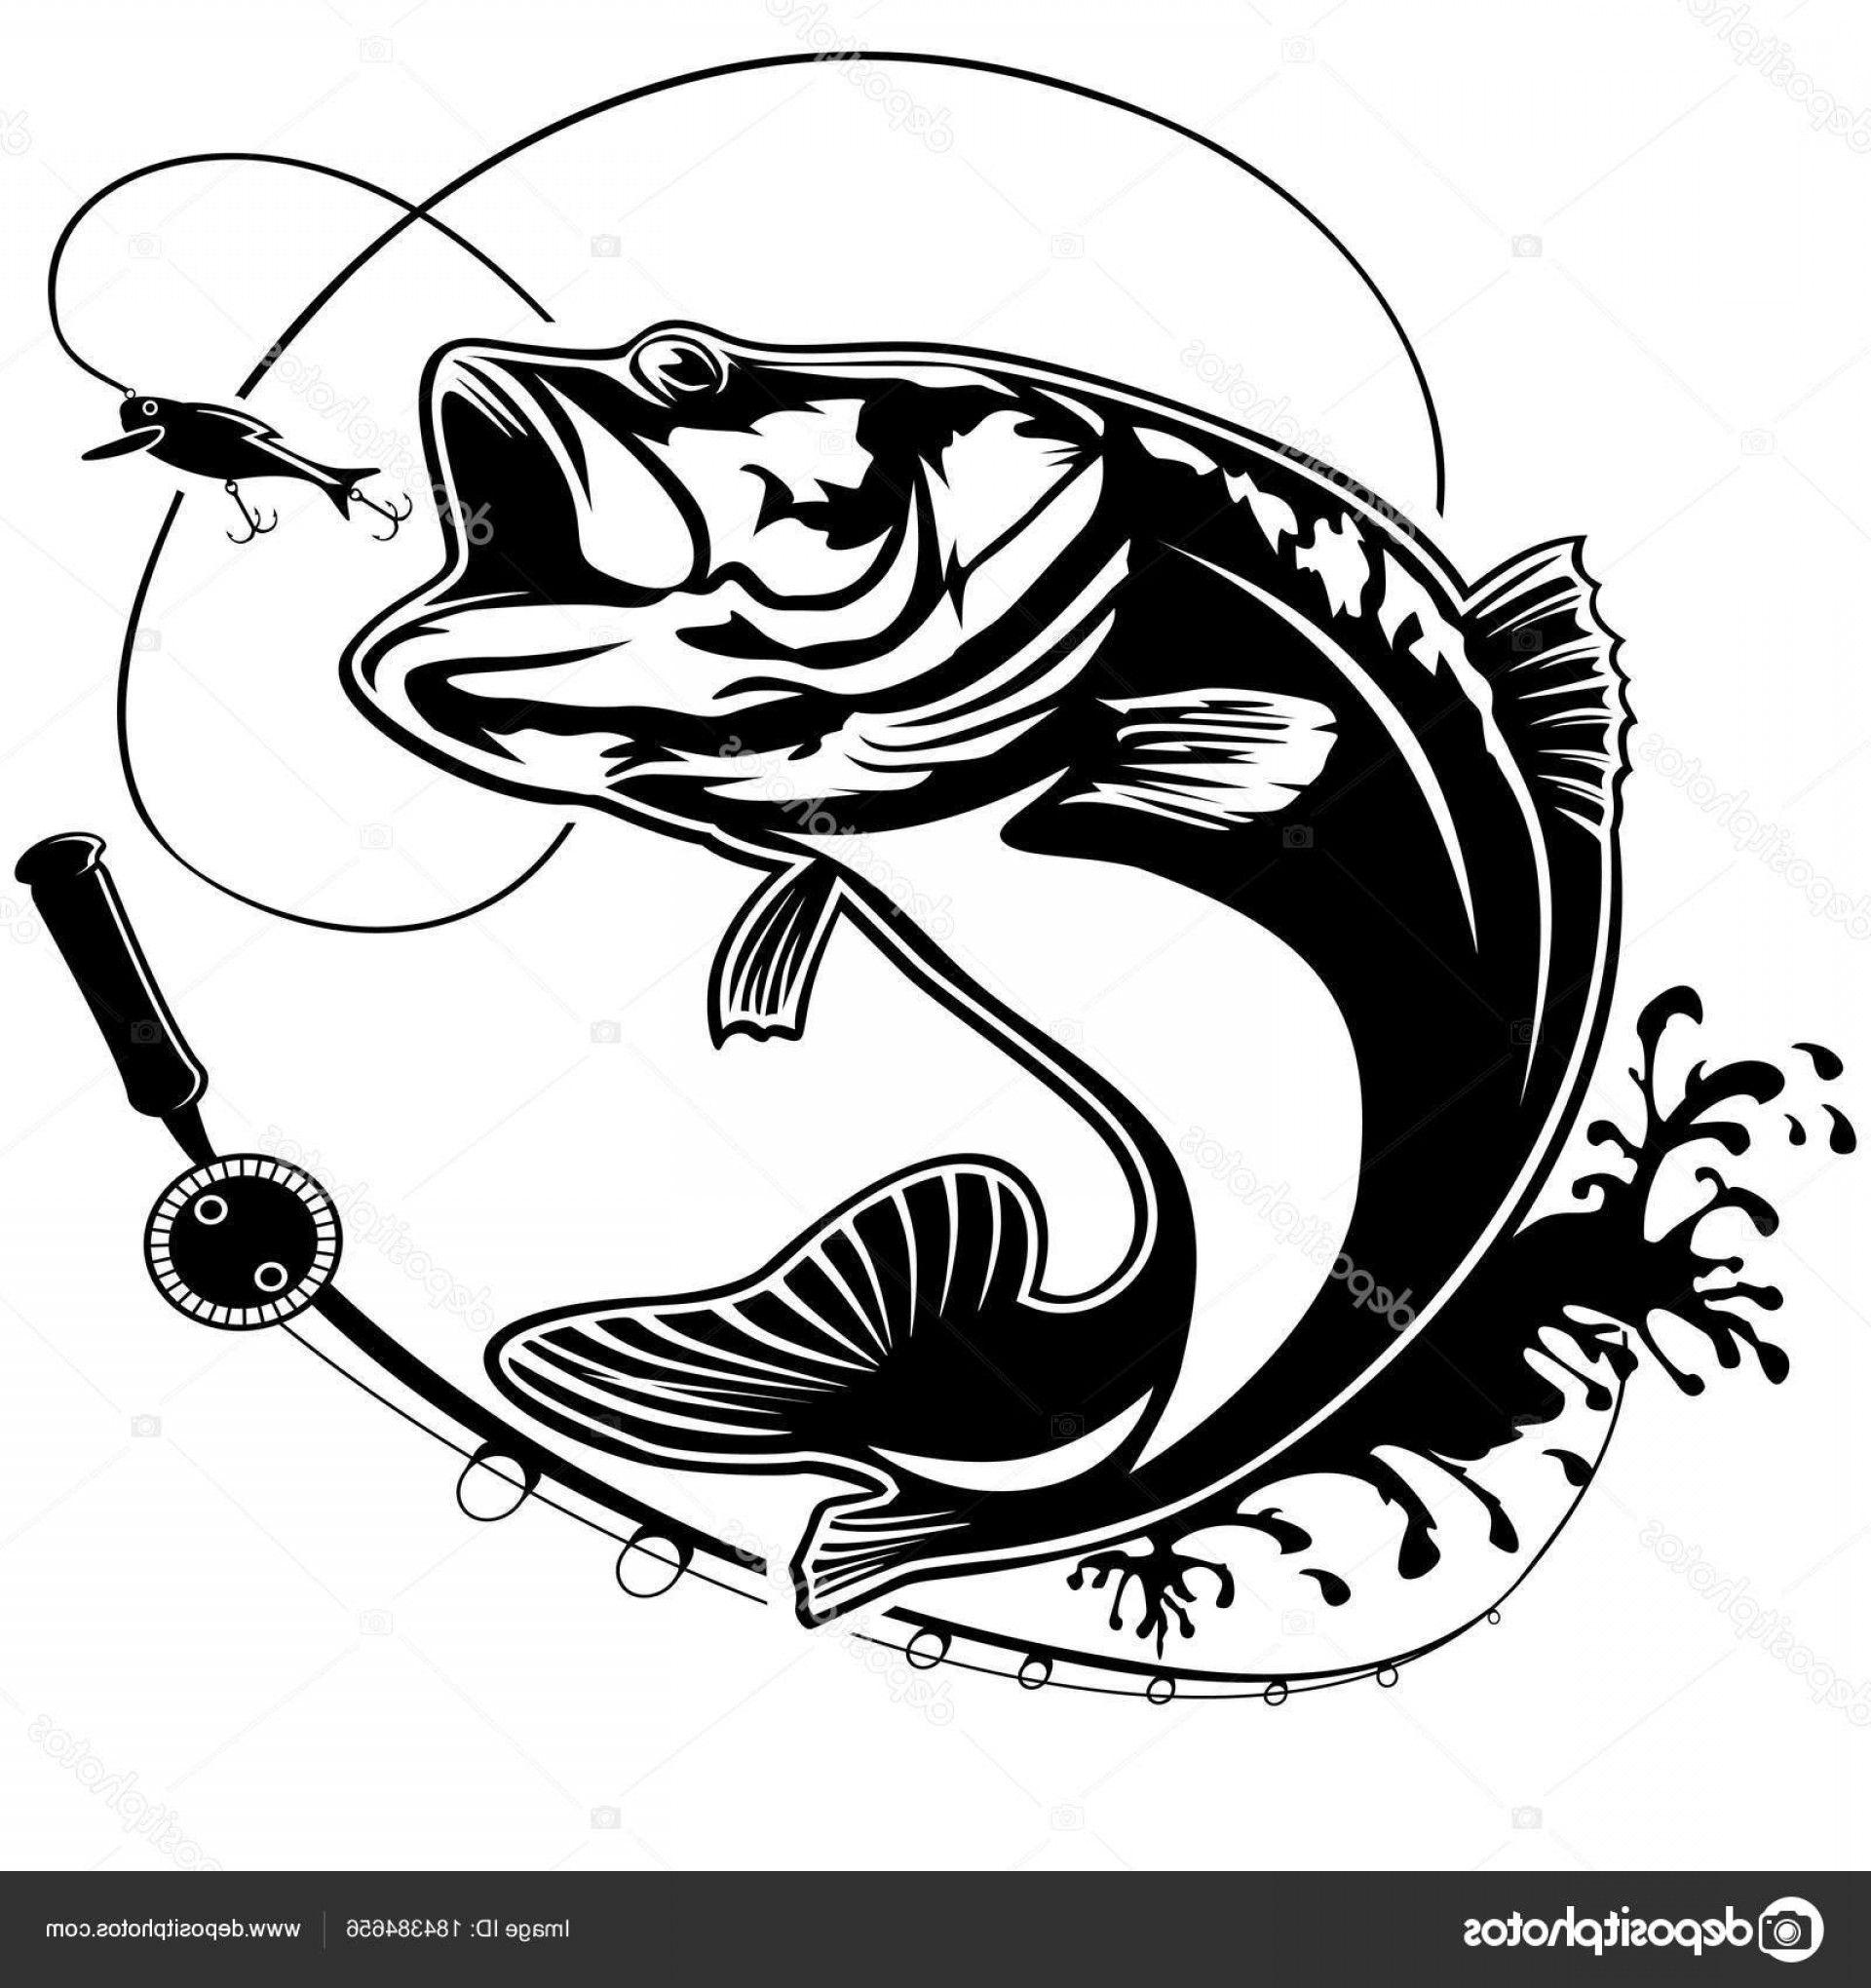 Black and White Bass Logo - Stock Illustration Fishing Bass Logo Isolated